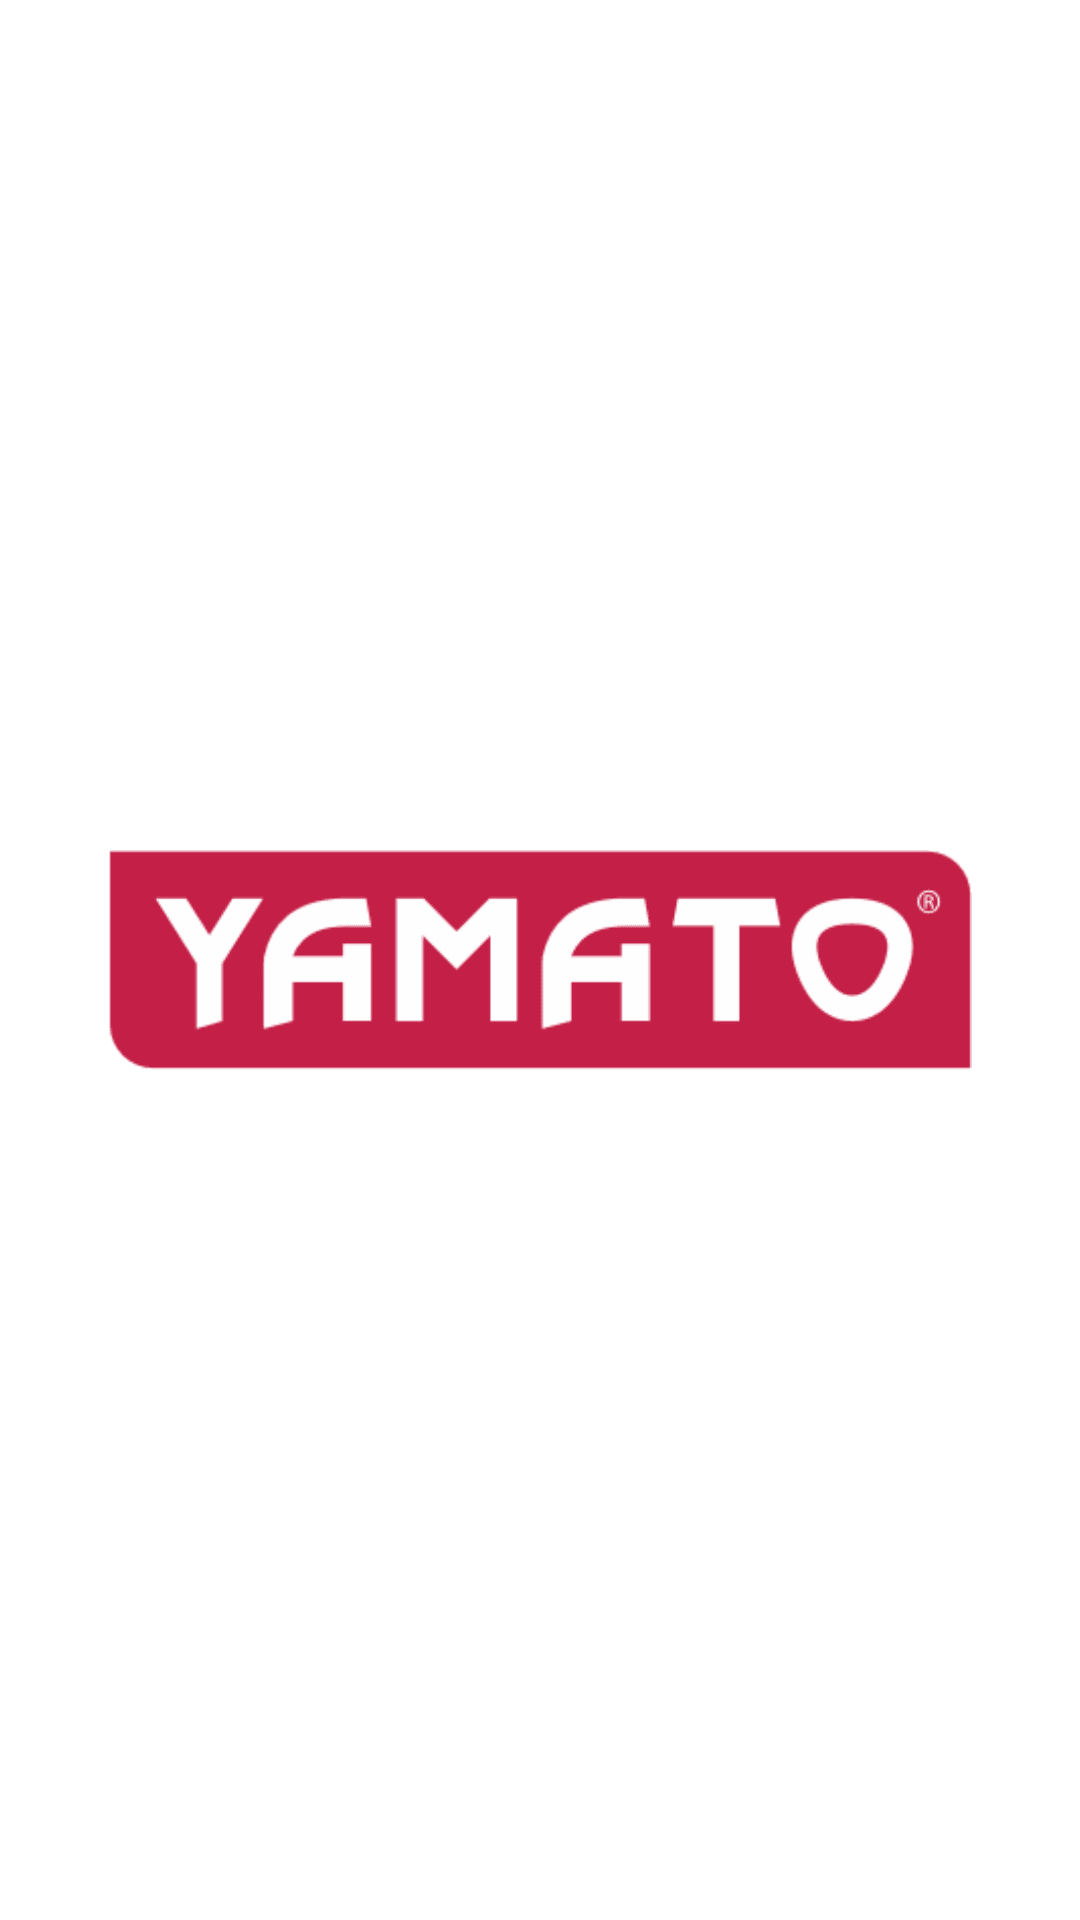 Yamato - Trapano a percussione elettrico 910Watt mandrino ø mm.13 Yamato